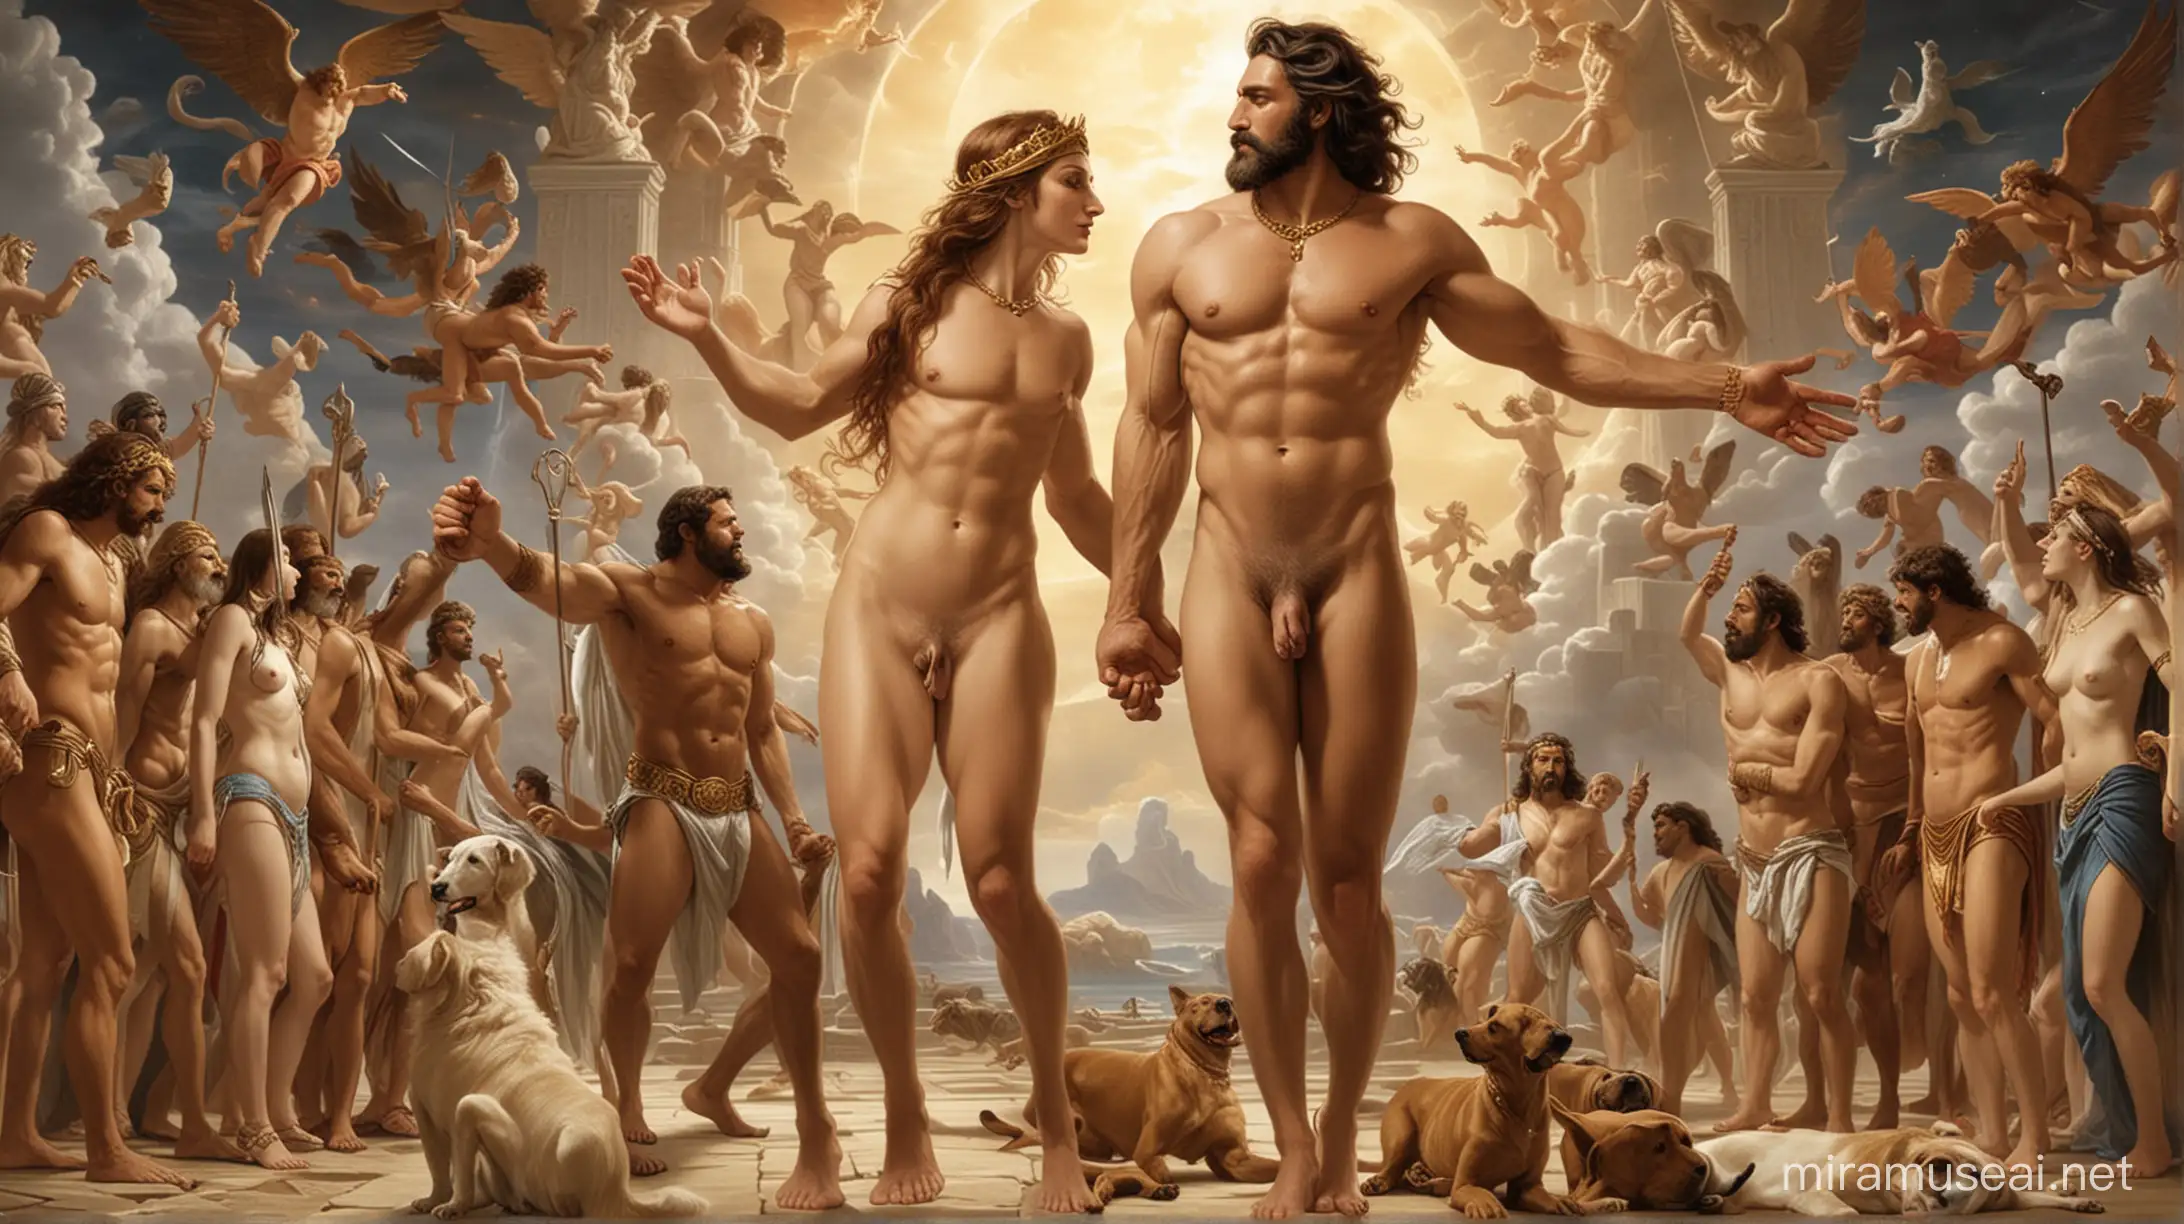 Divine Creation Gods and Human Origins in Mythological Form